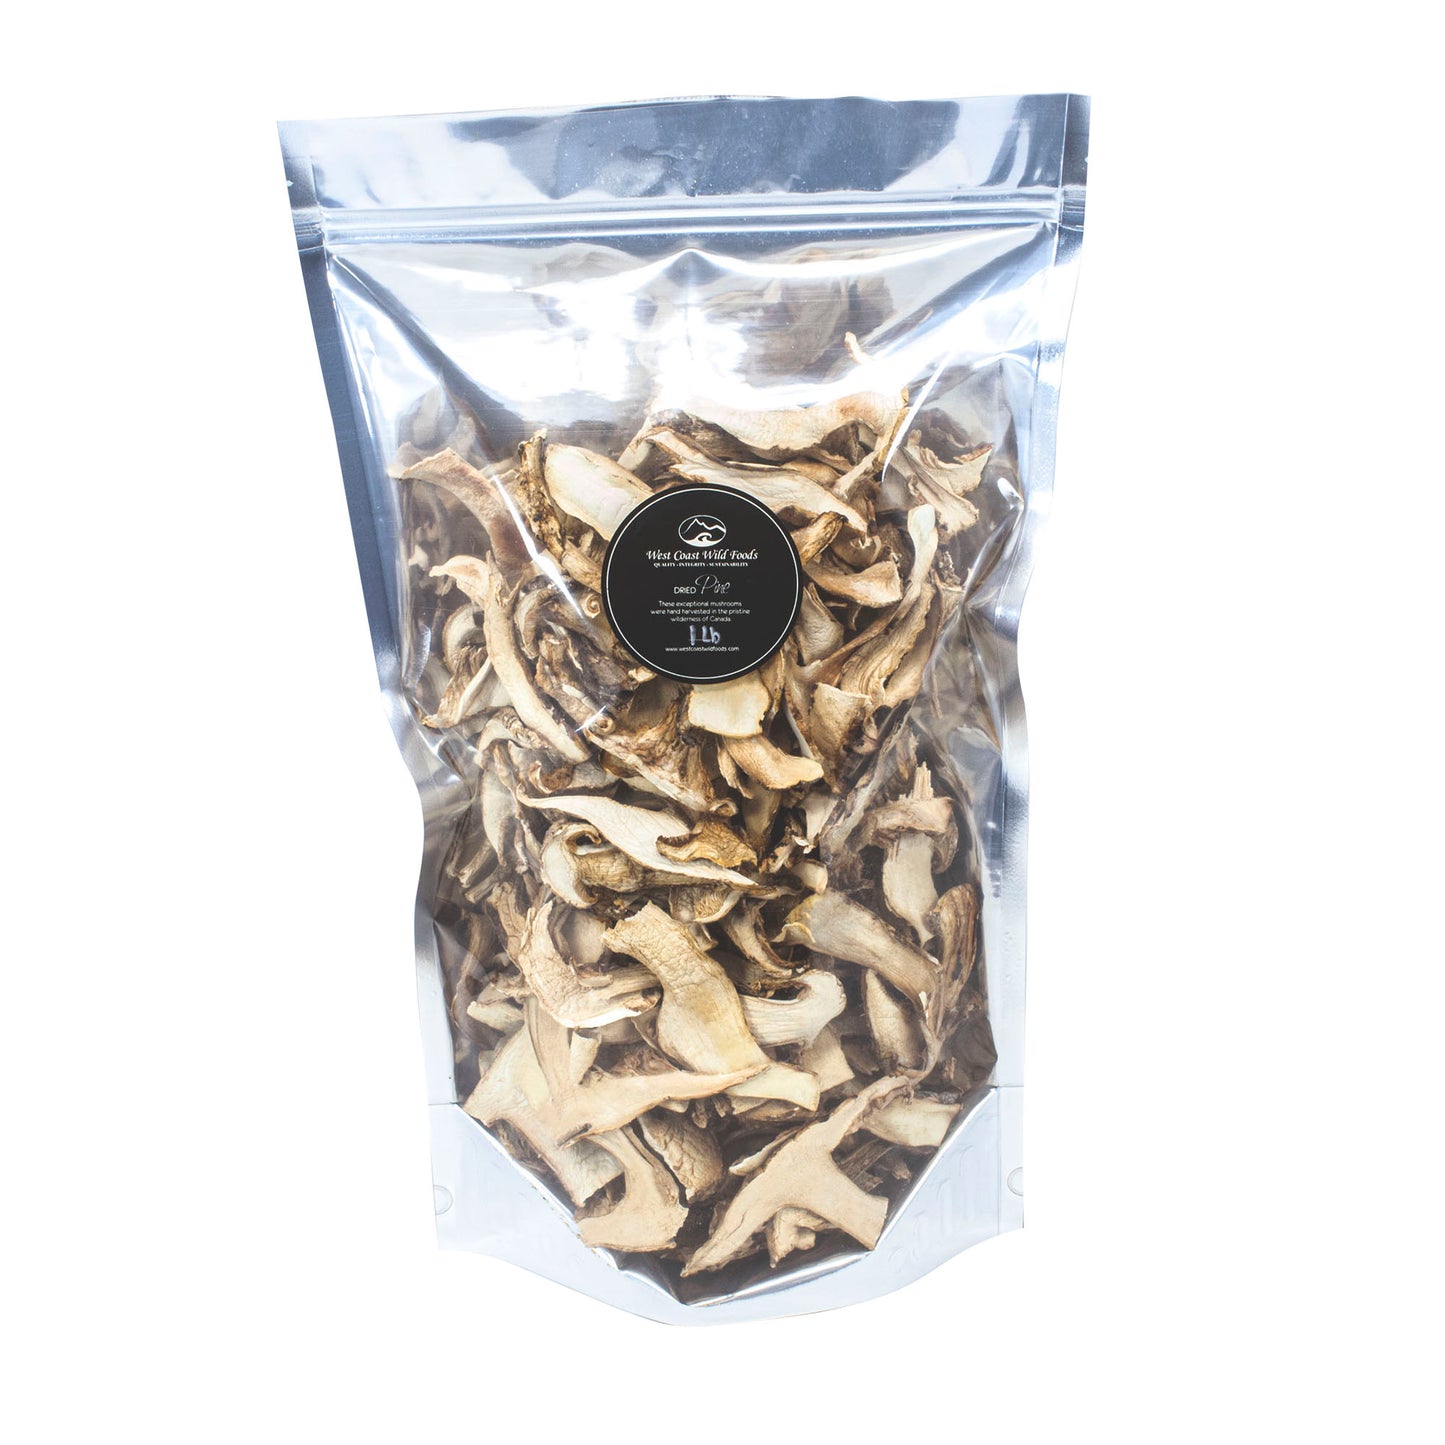 Dried Pine Mushrooms - 1lb